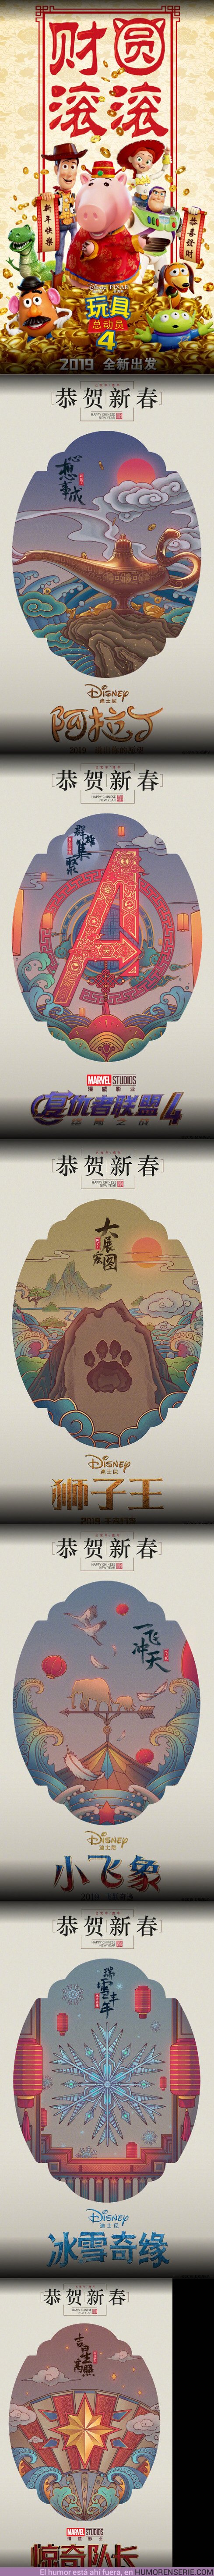 34547 - GALERÍA: Disney celebra el año nuevo chino con estos pósters increíbles